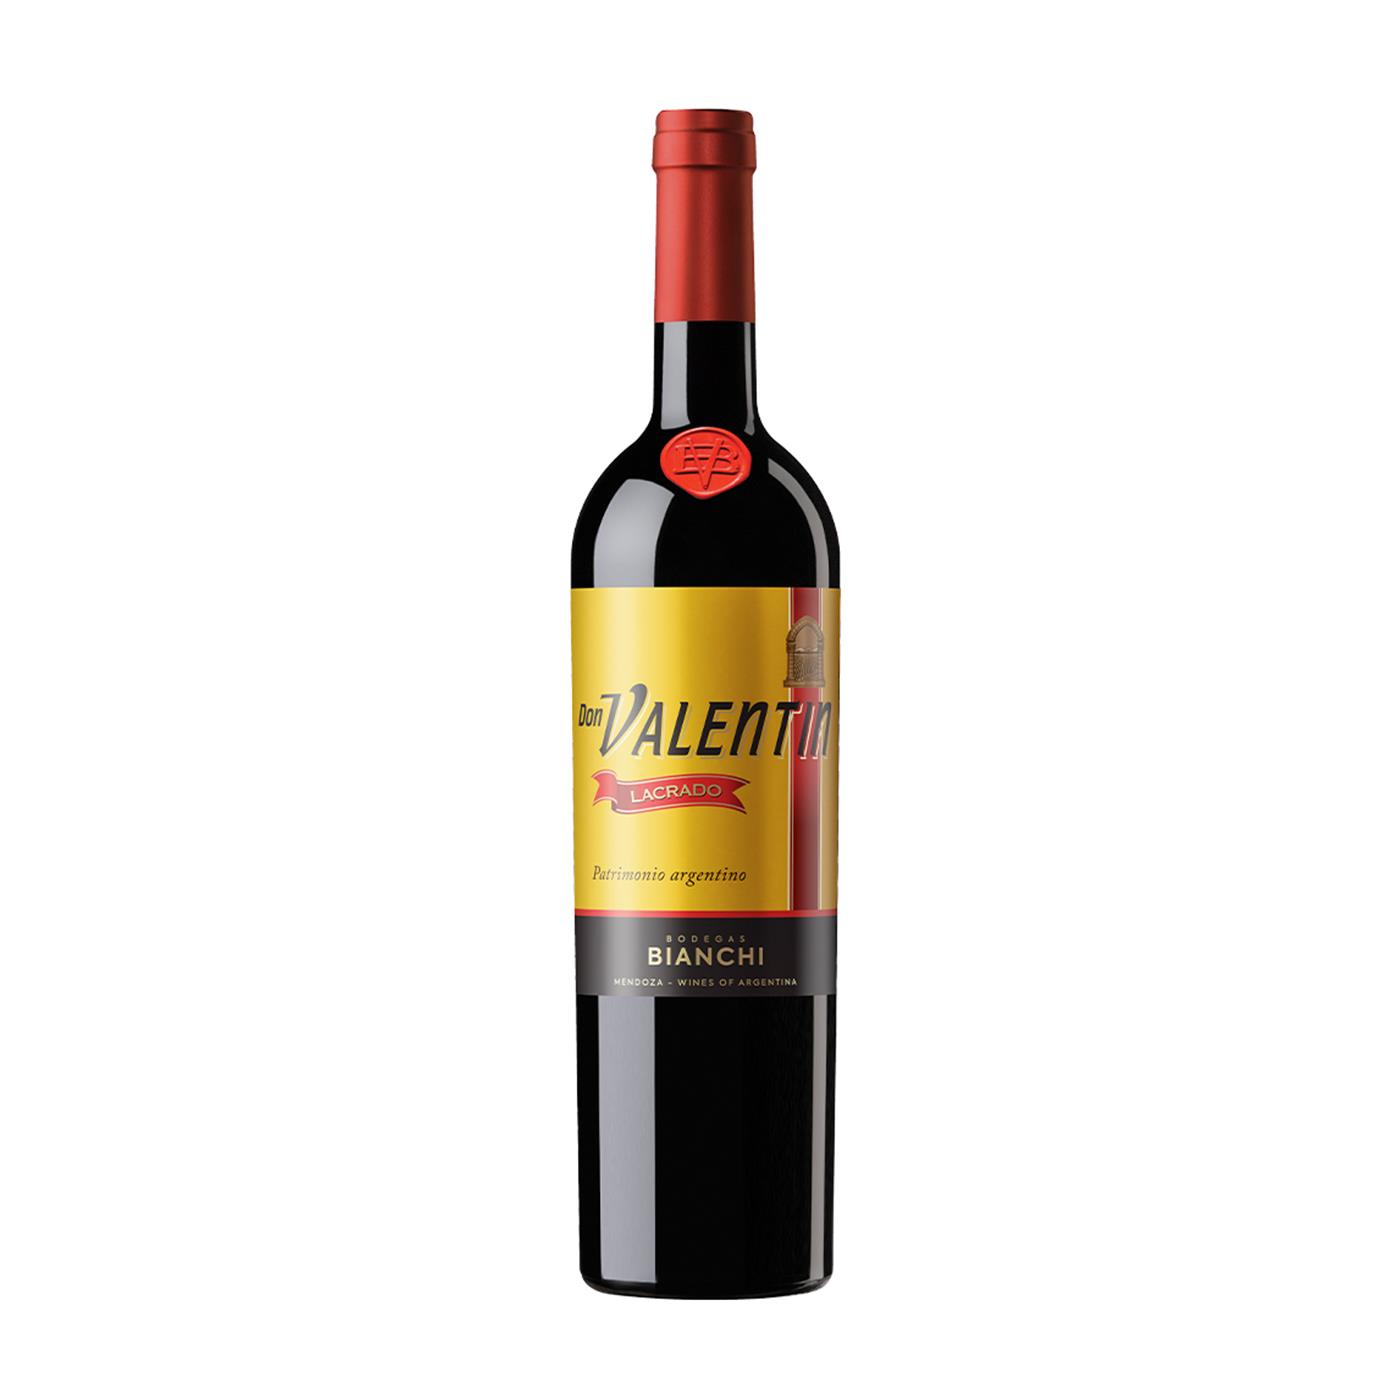 ドン・ヴァレンティン ラクラード レッド (2021) ピーロート・ジャパン ハイエンド・高級ワイン通販